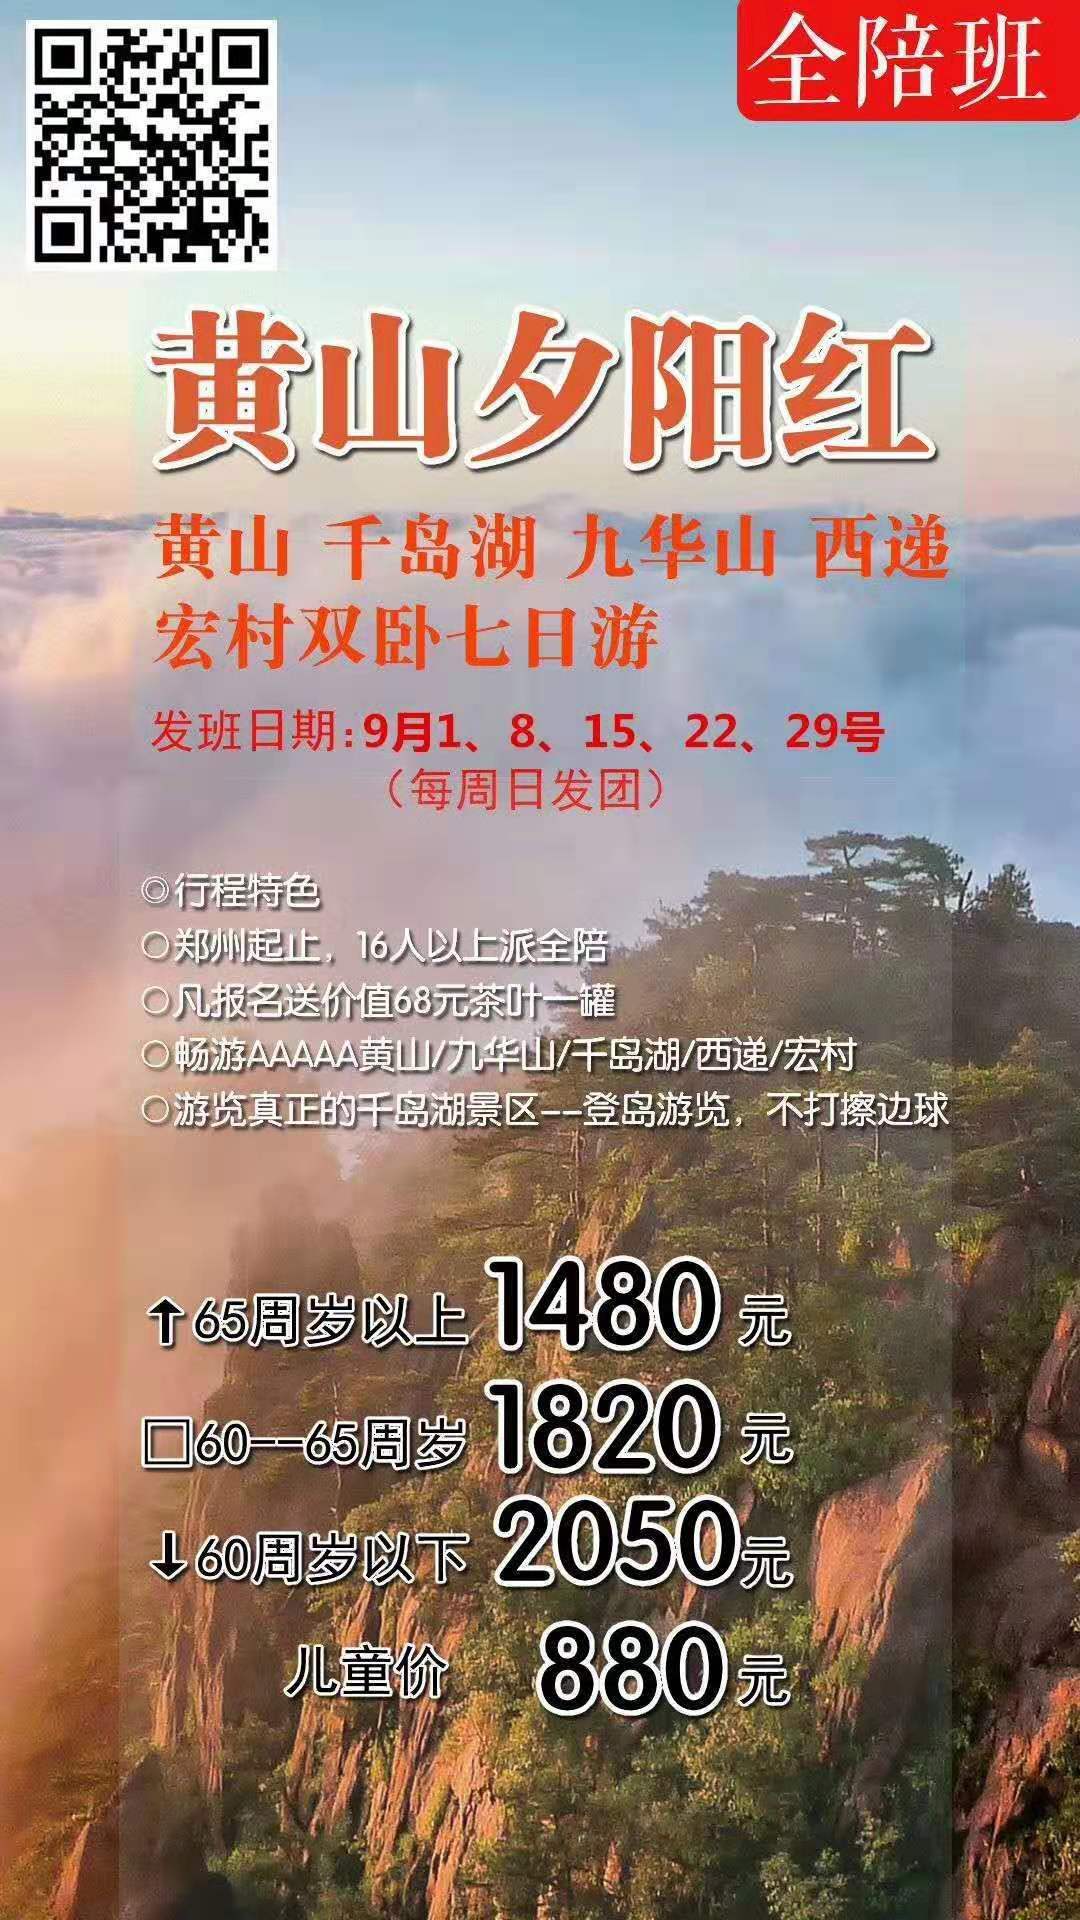 林州旅行社十一火车飞机团出游计划